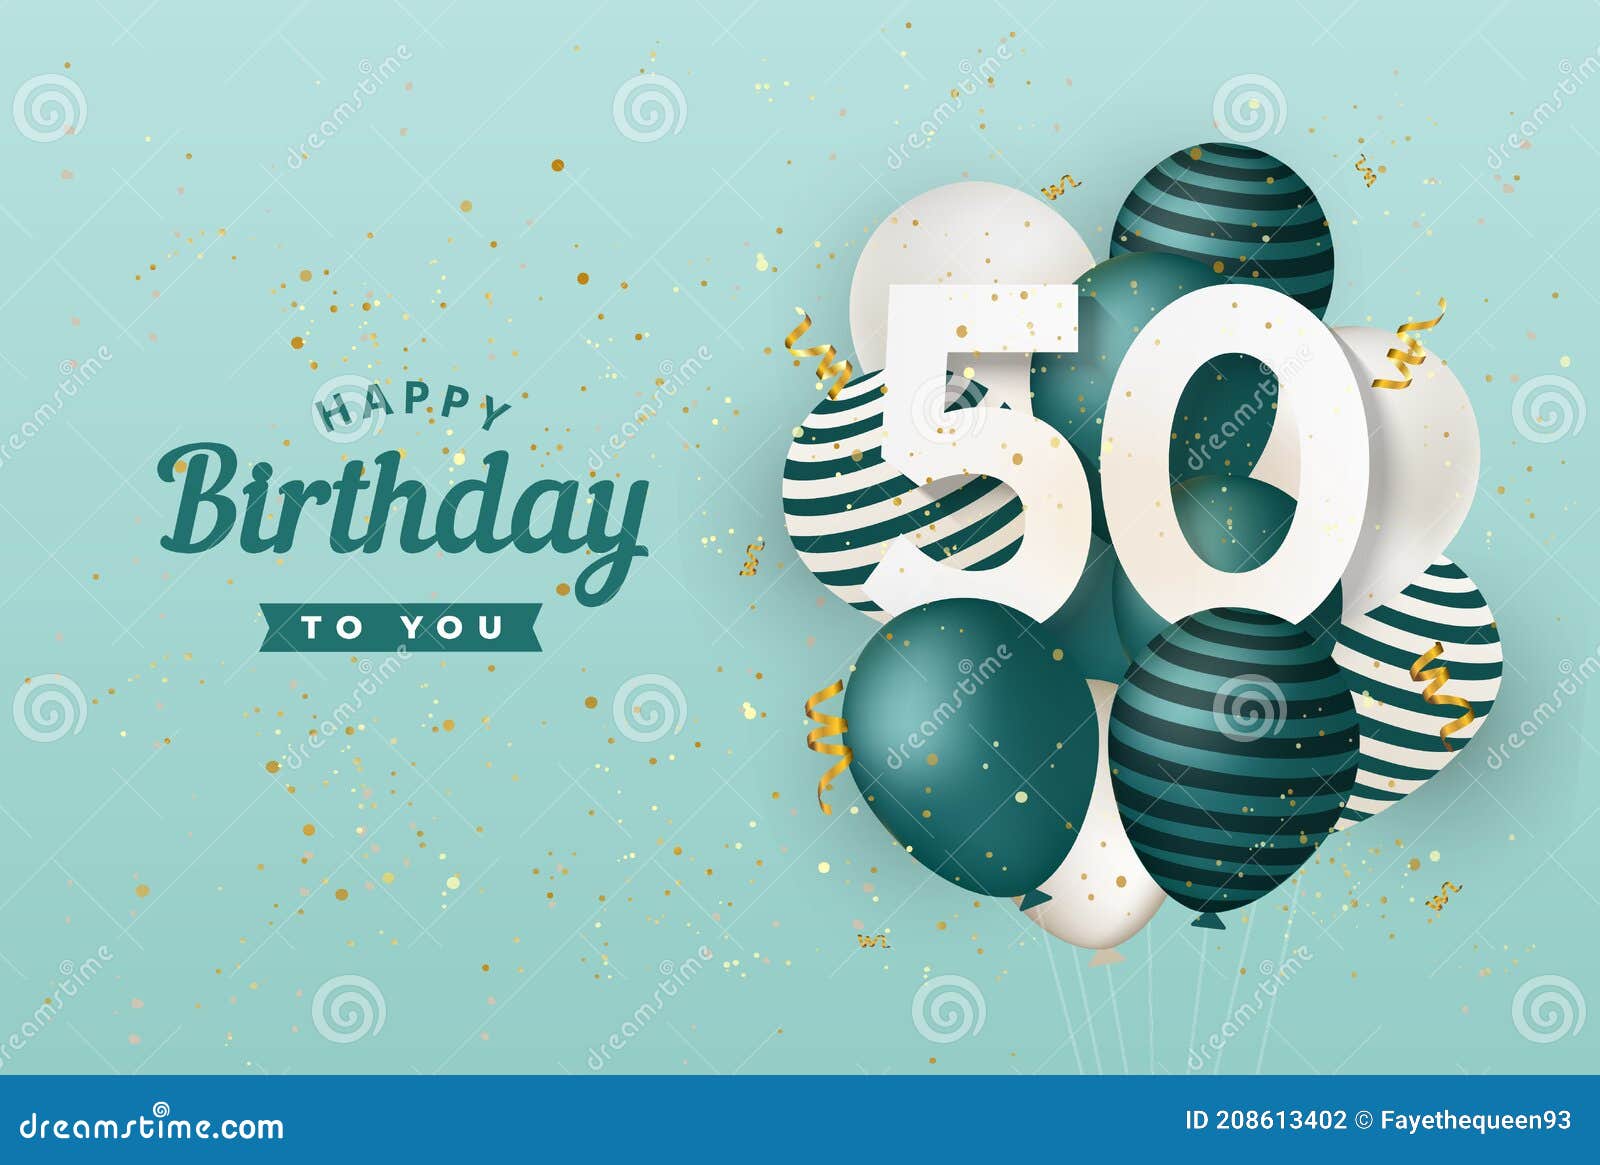 50 anos feliz cumpleanos ilustración de Stock